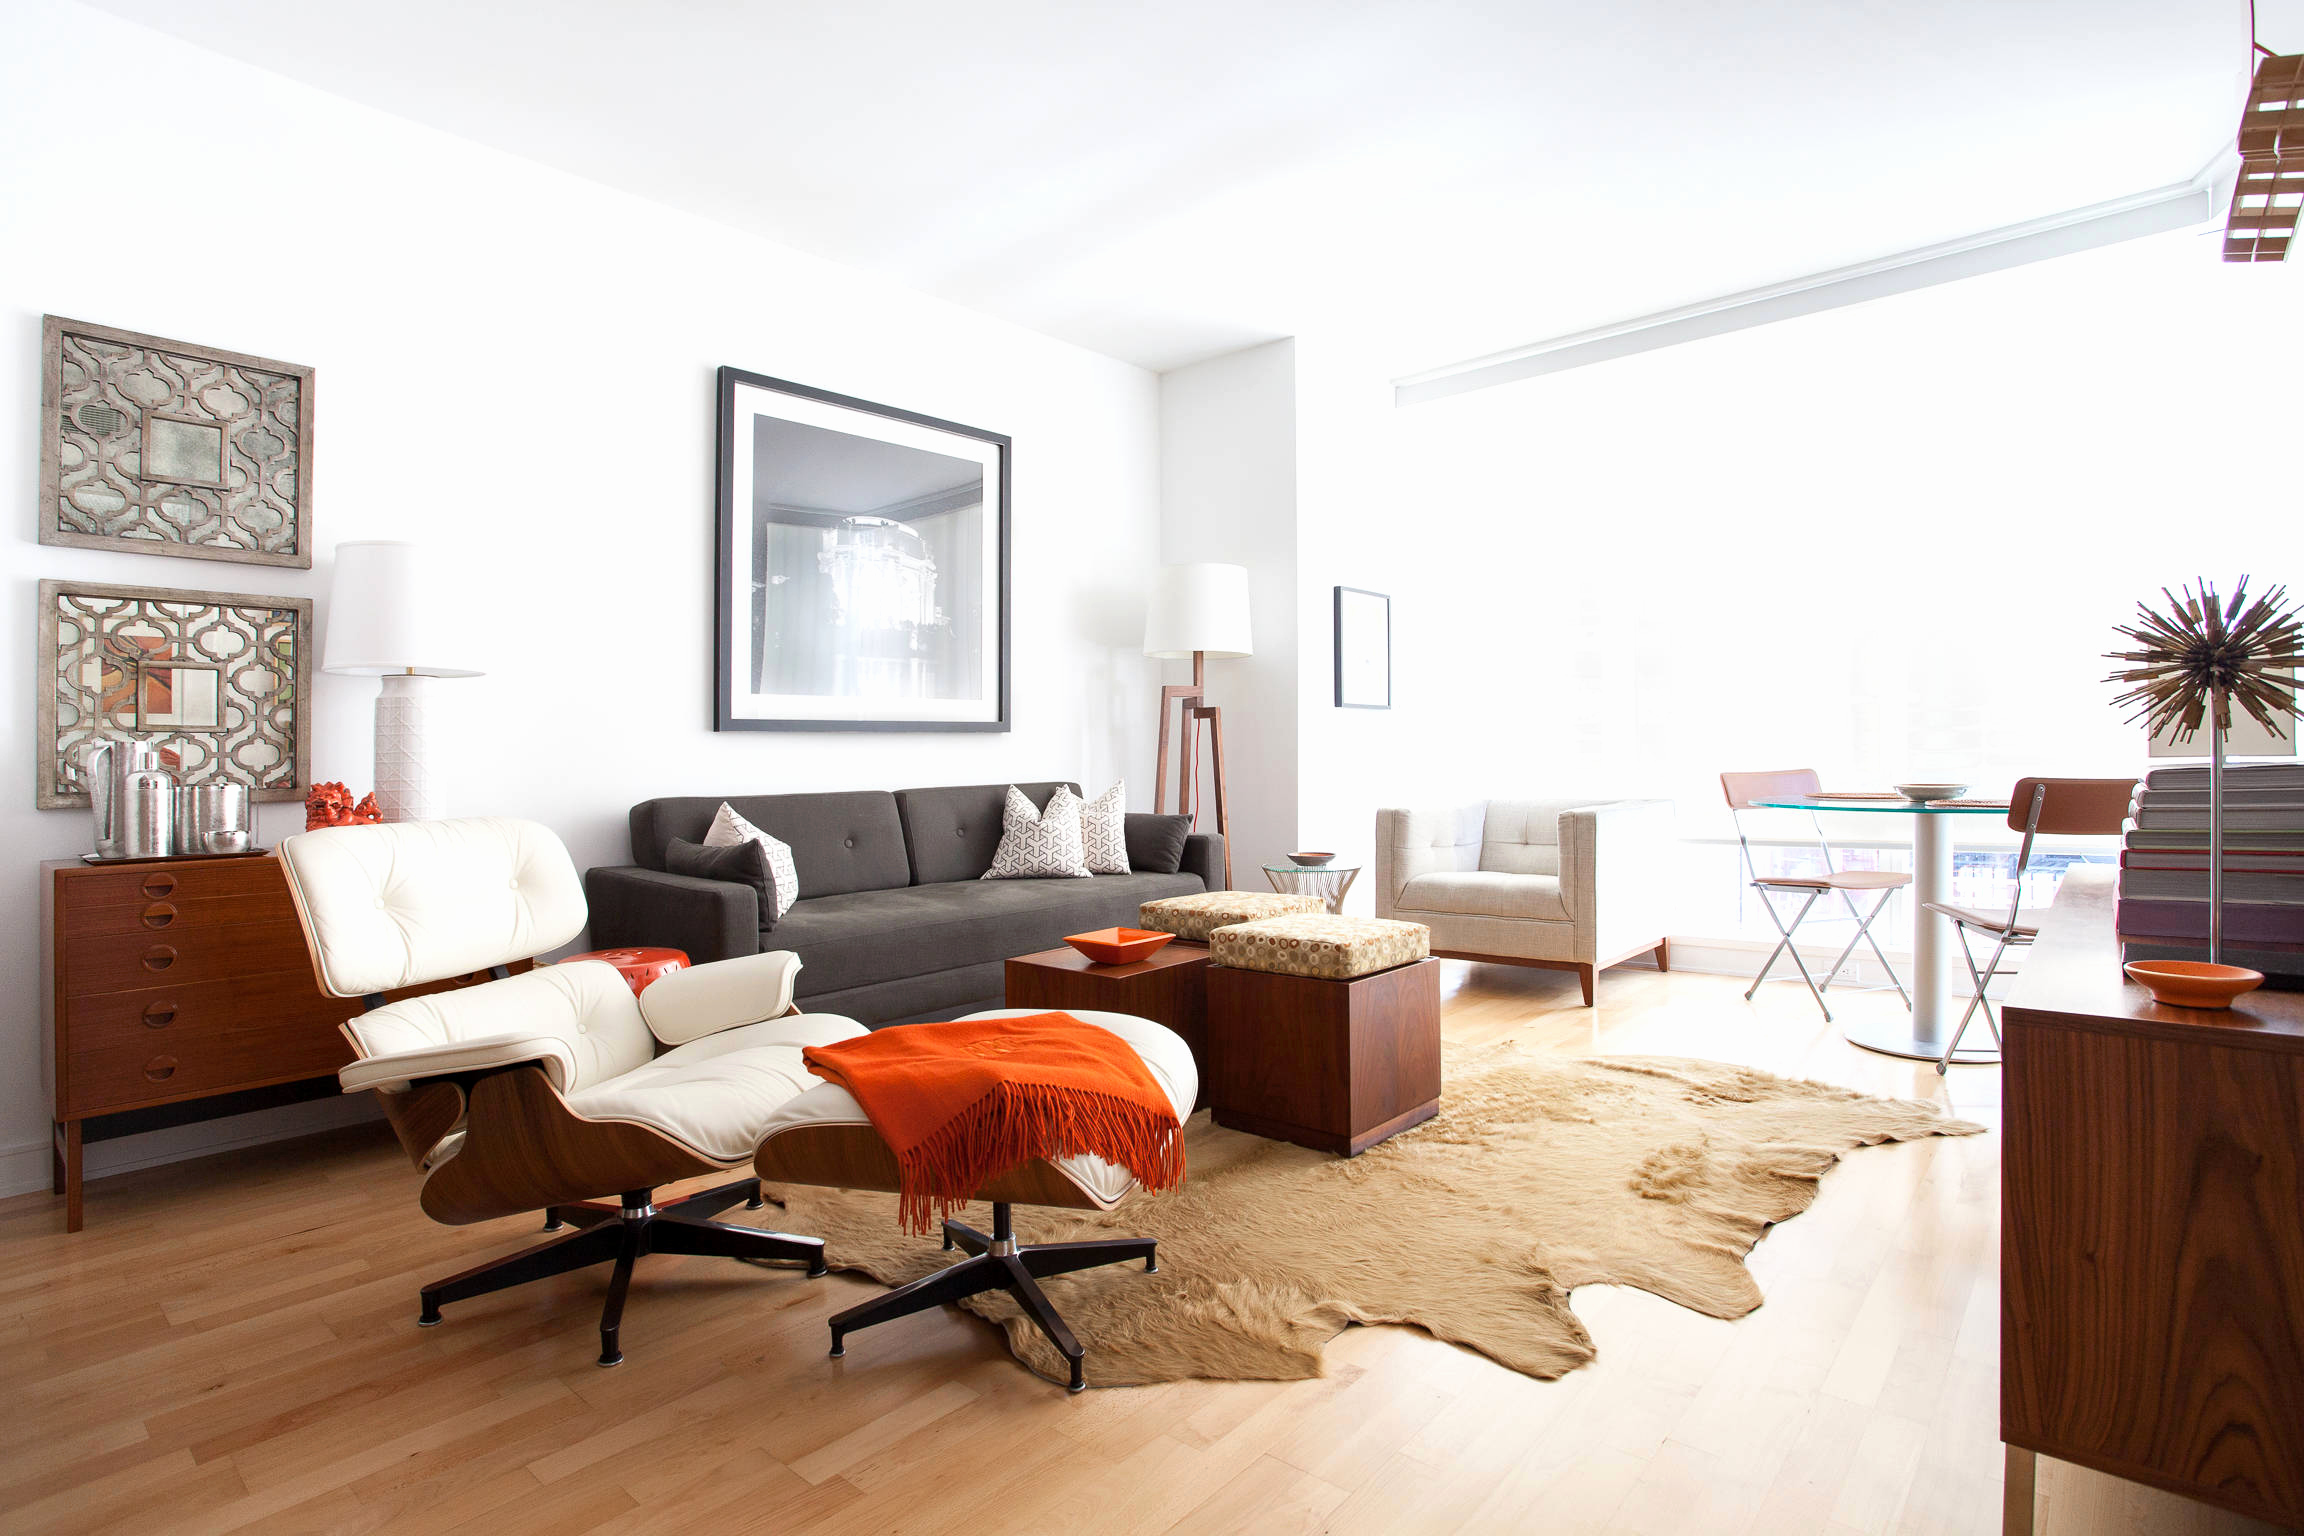 Treffen Sie bei der Auswahl eines Sofas für Ihr Zuhause die Wahl mit aller Verantwortung, denn das Sofa kann, wie jedes Detail des Interieurs, es sowohl verschönern als auch abwechslungsreich gestalten oder es verderben